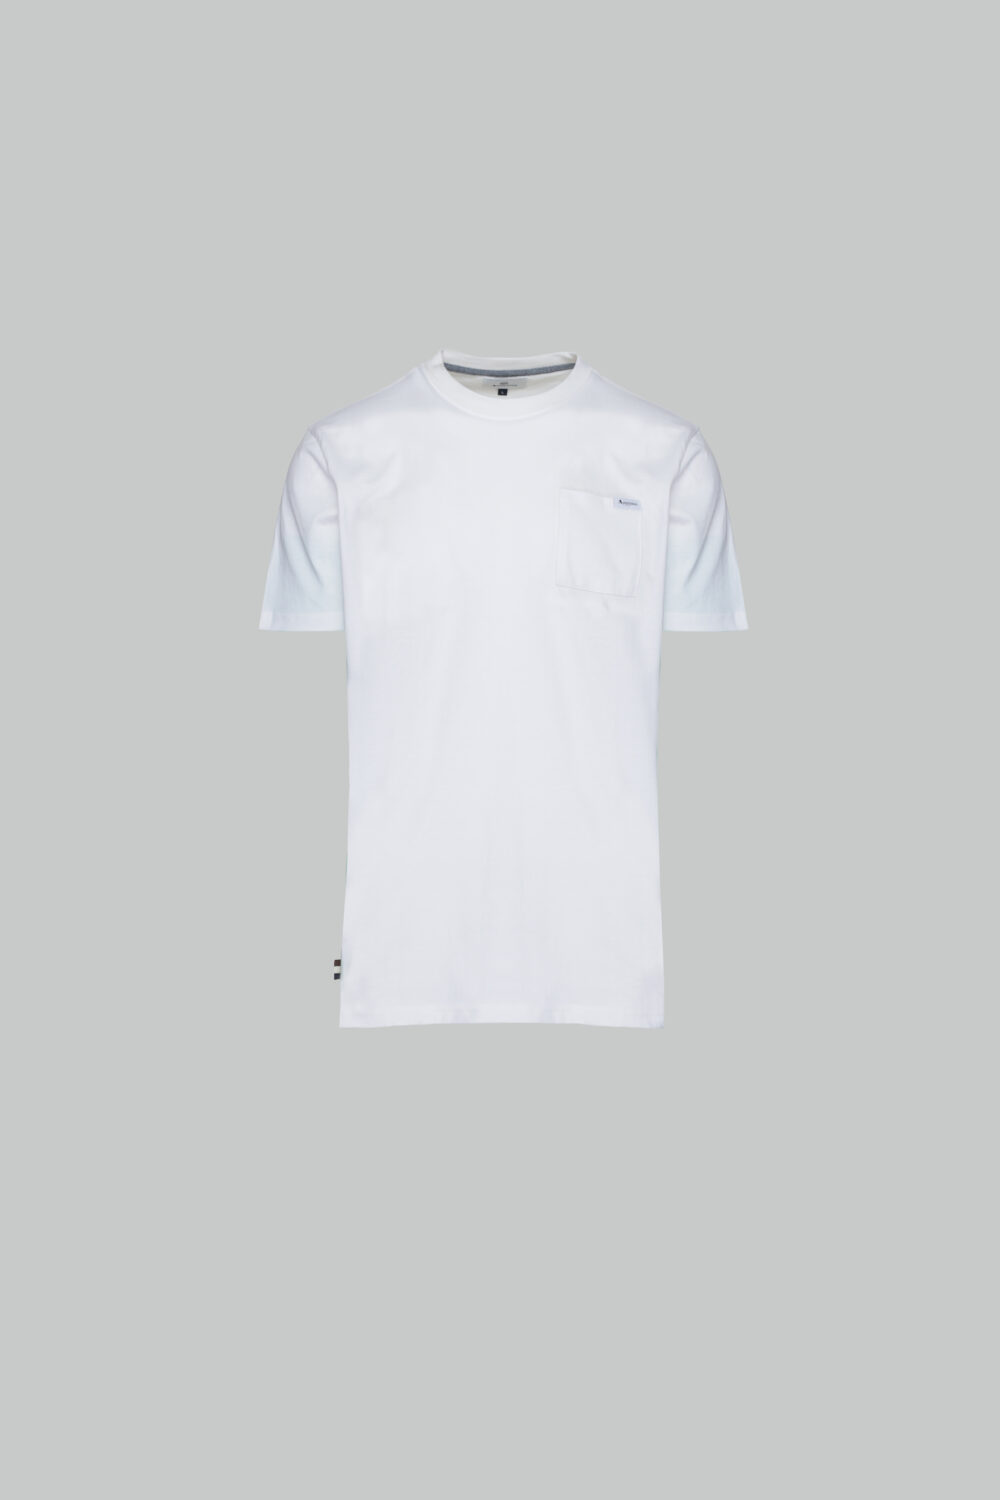 T-shirt Aquascutum ACTIVE  POCKET T-SHIRT Bianco - Foto 1